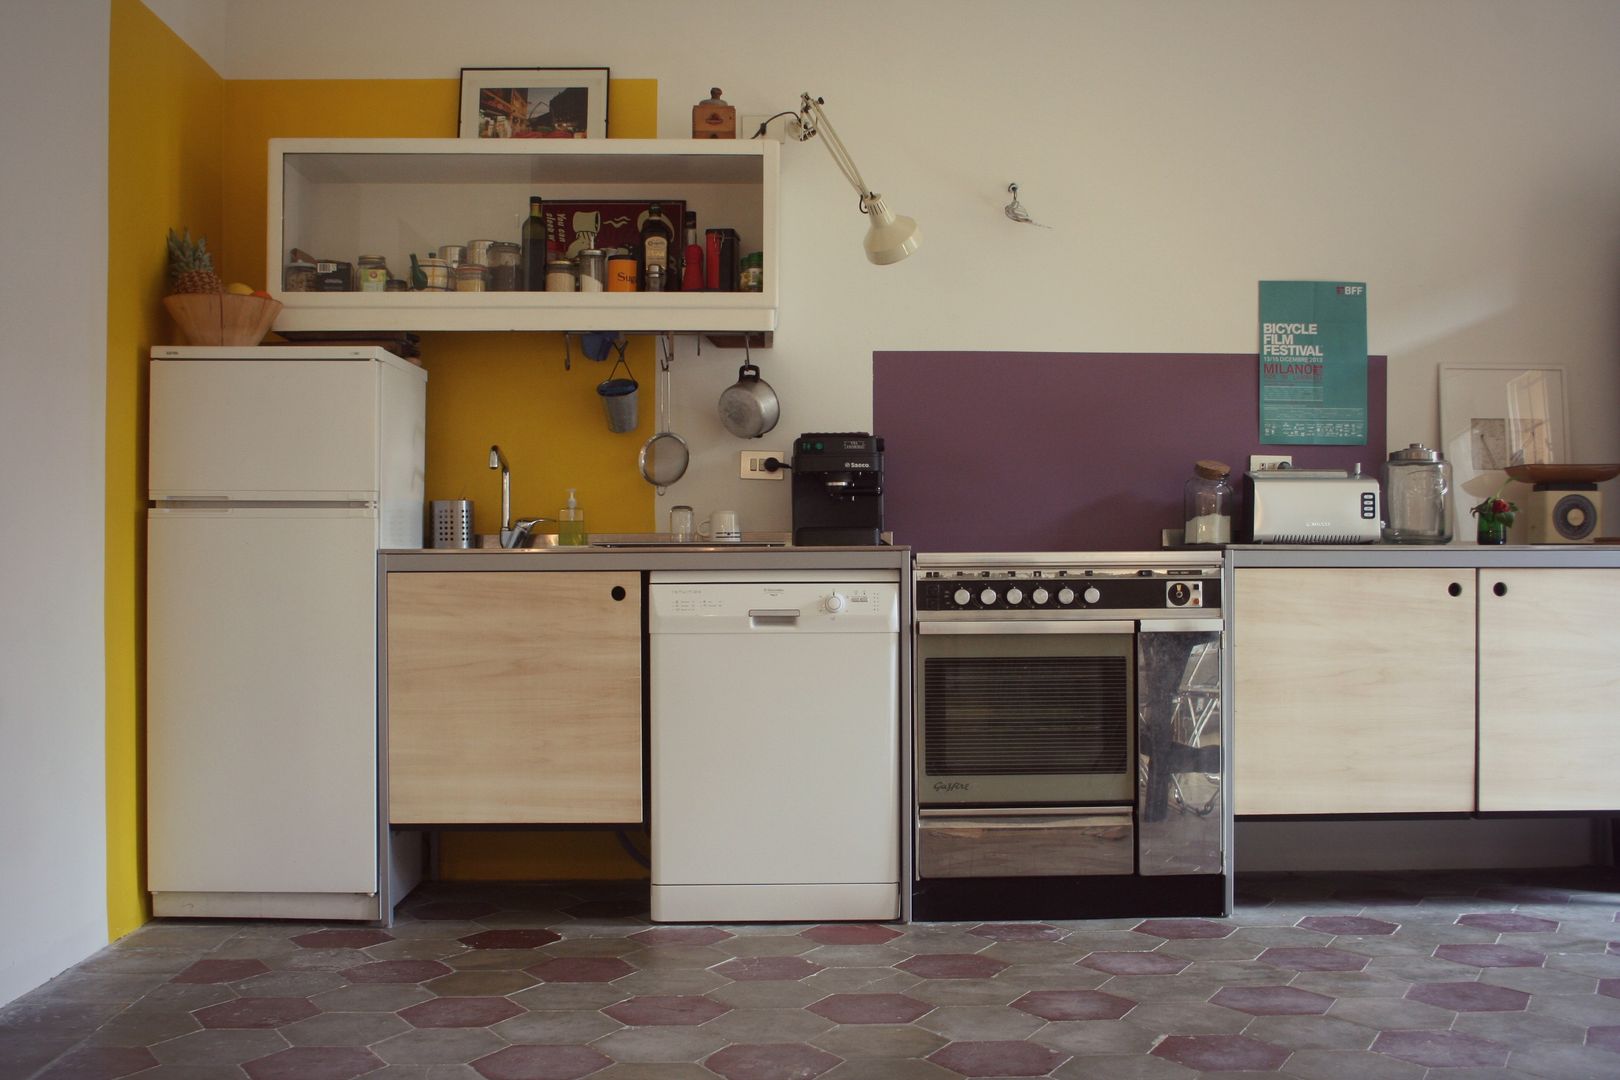 Cucina Atelier delle Verdure Cucina eclettica colori delle pareti,riquadri di colore,mobile a giorno